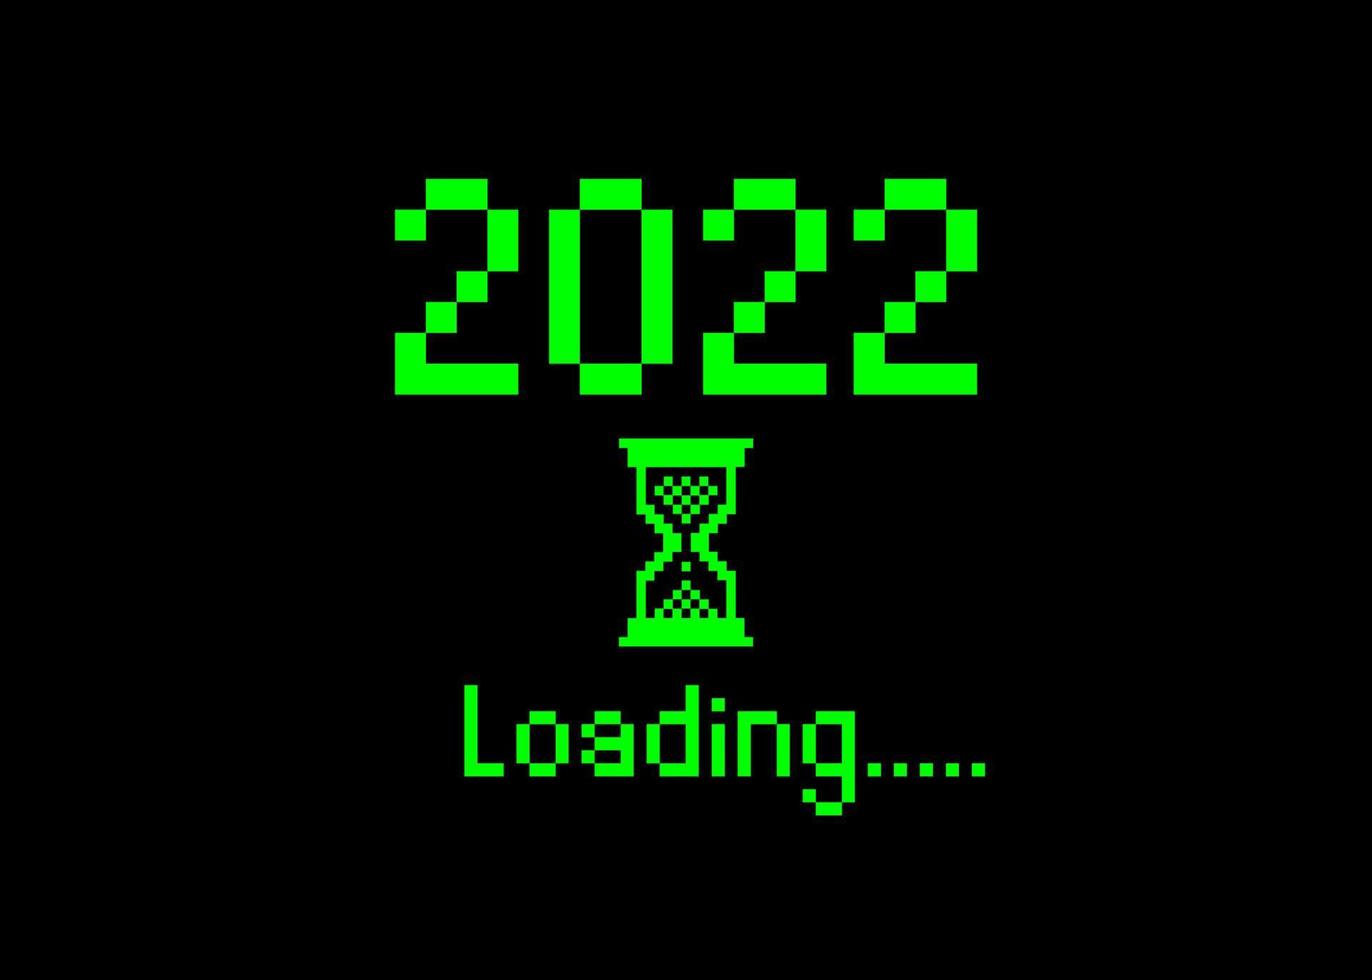 gott nytt år 2022 med laddningsikon pixel art bitmappstil. förloppsindikatorn närmar sig nästan nyårsafton. grön vektor platt design 2022 laddar pixel timglasmarkör. isolerad eller svart bakgrund